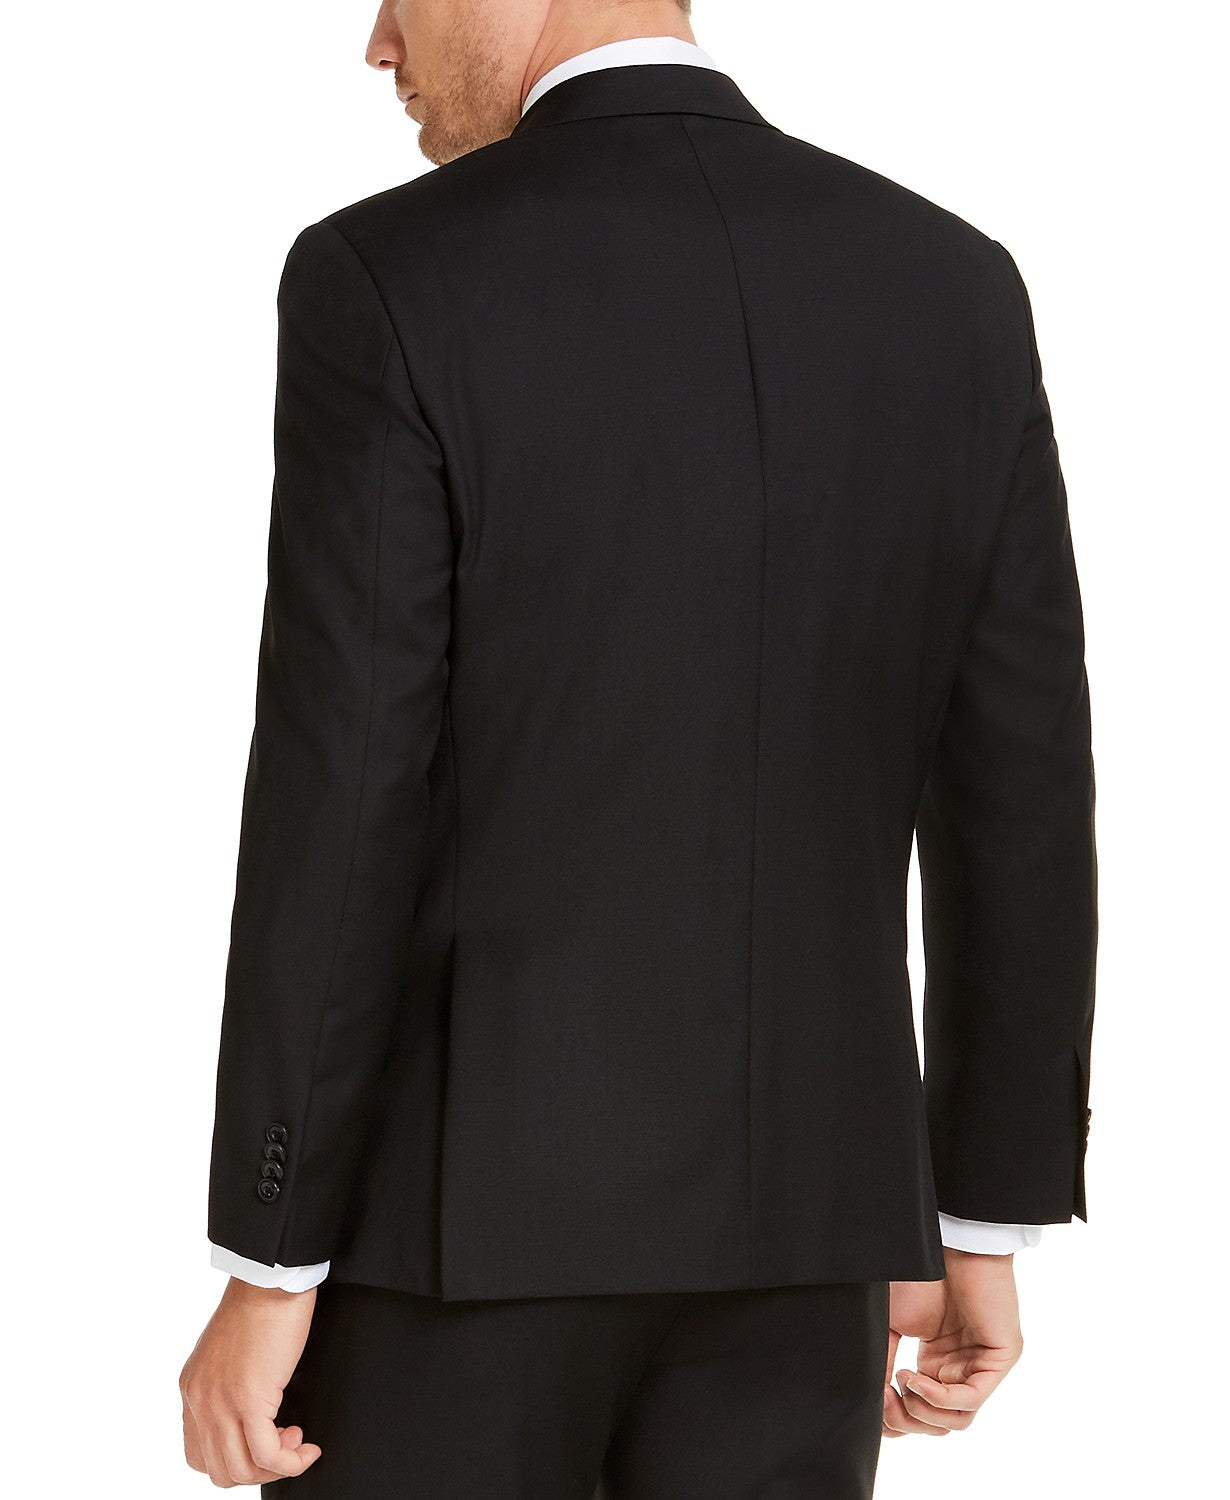 Michael Kors Men's Black Solid Suit Jacket 44L Classic-Fit Airsoft Stretch